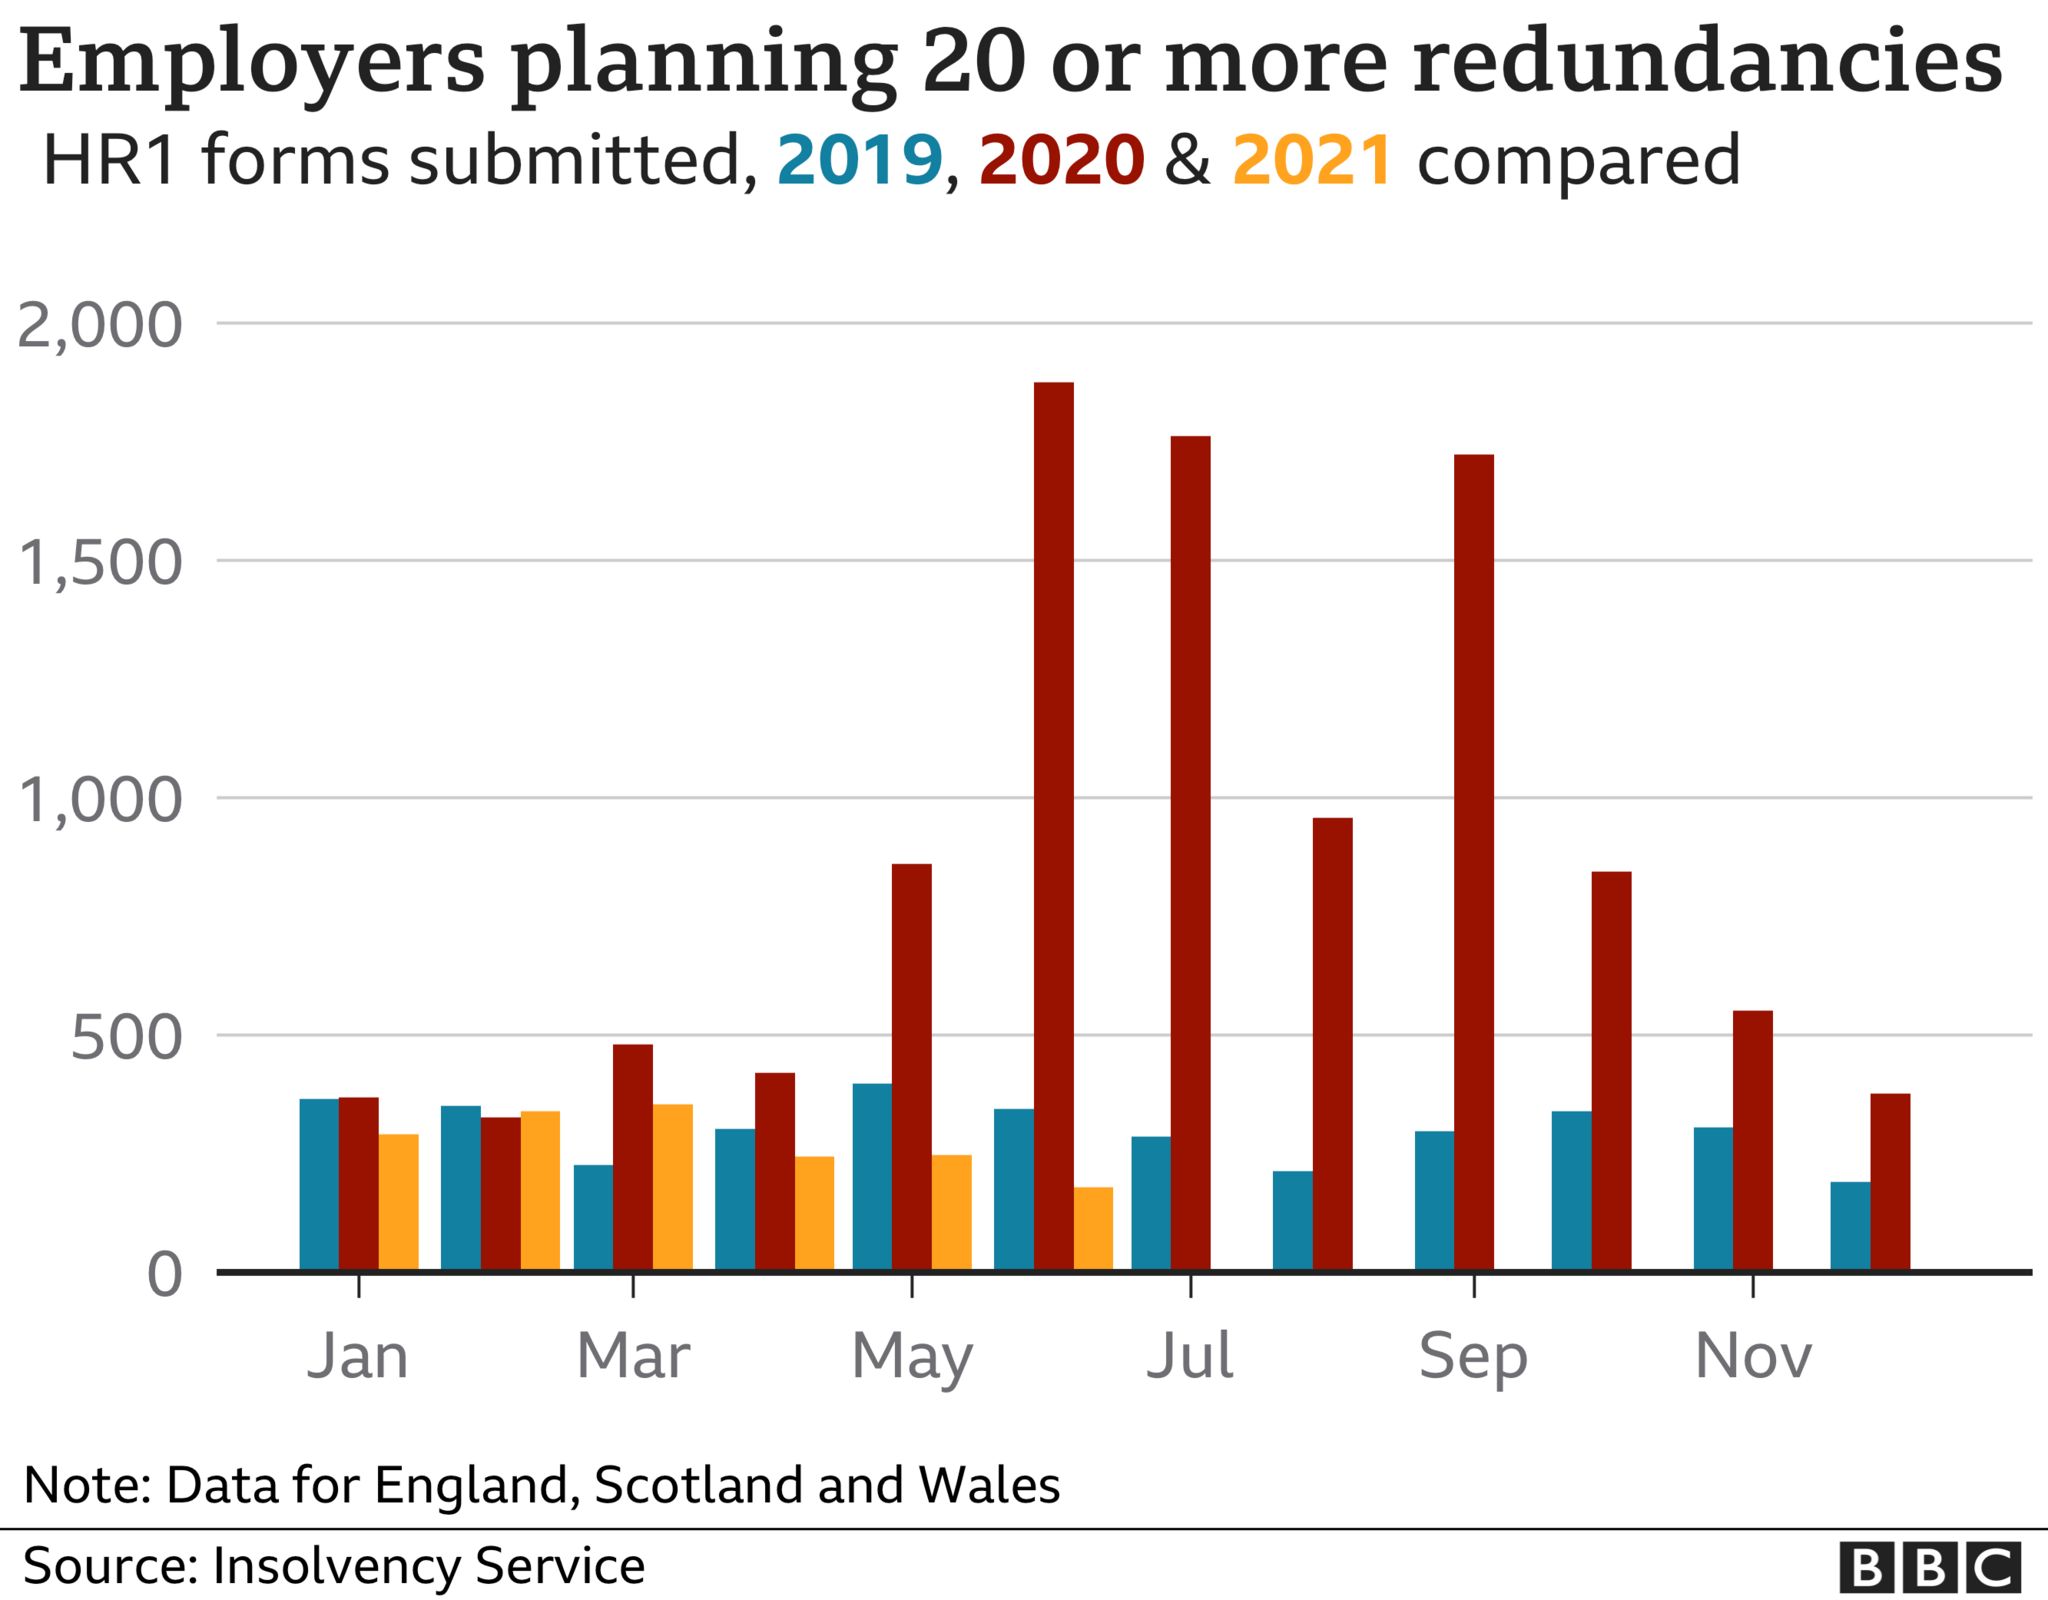 График количества работодателей, планирующих 20 и более увольнений на 2019, 2020 и 2021 годы